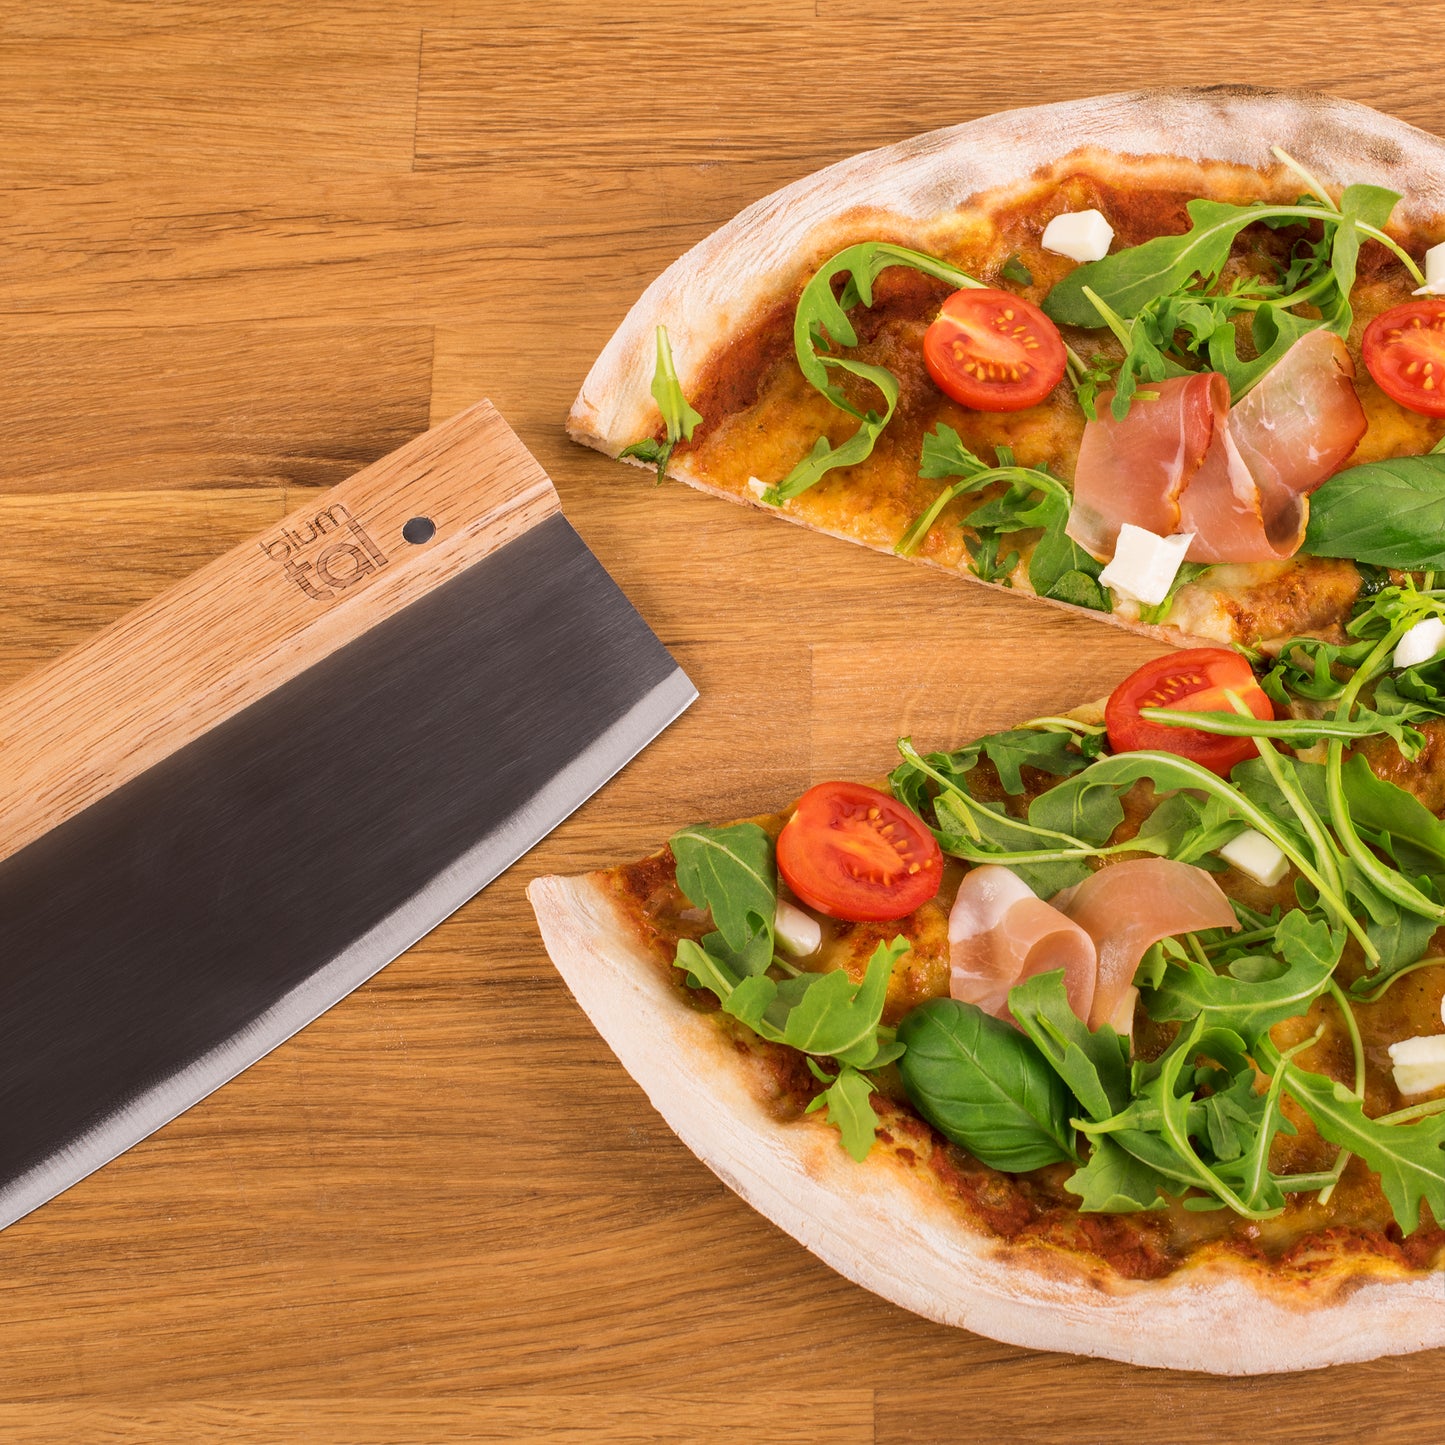 Das Wiegemesser liegt neben einer Pizza auf einem Holzbrett.